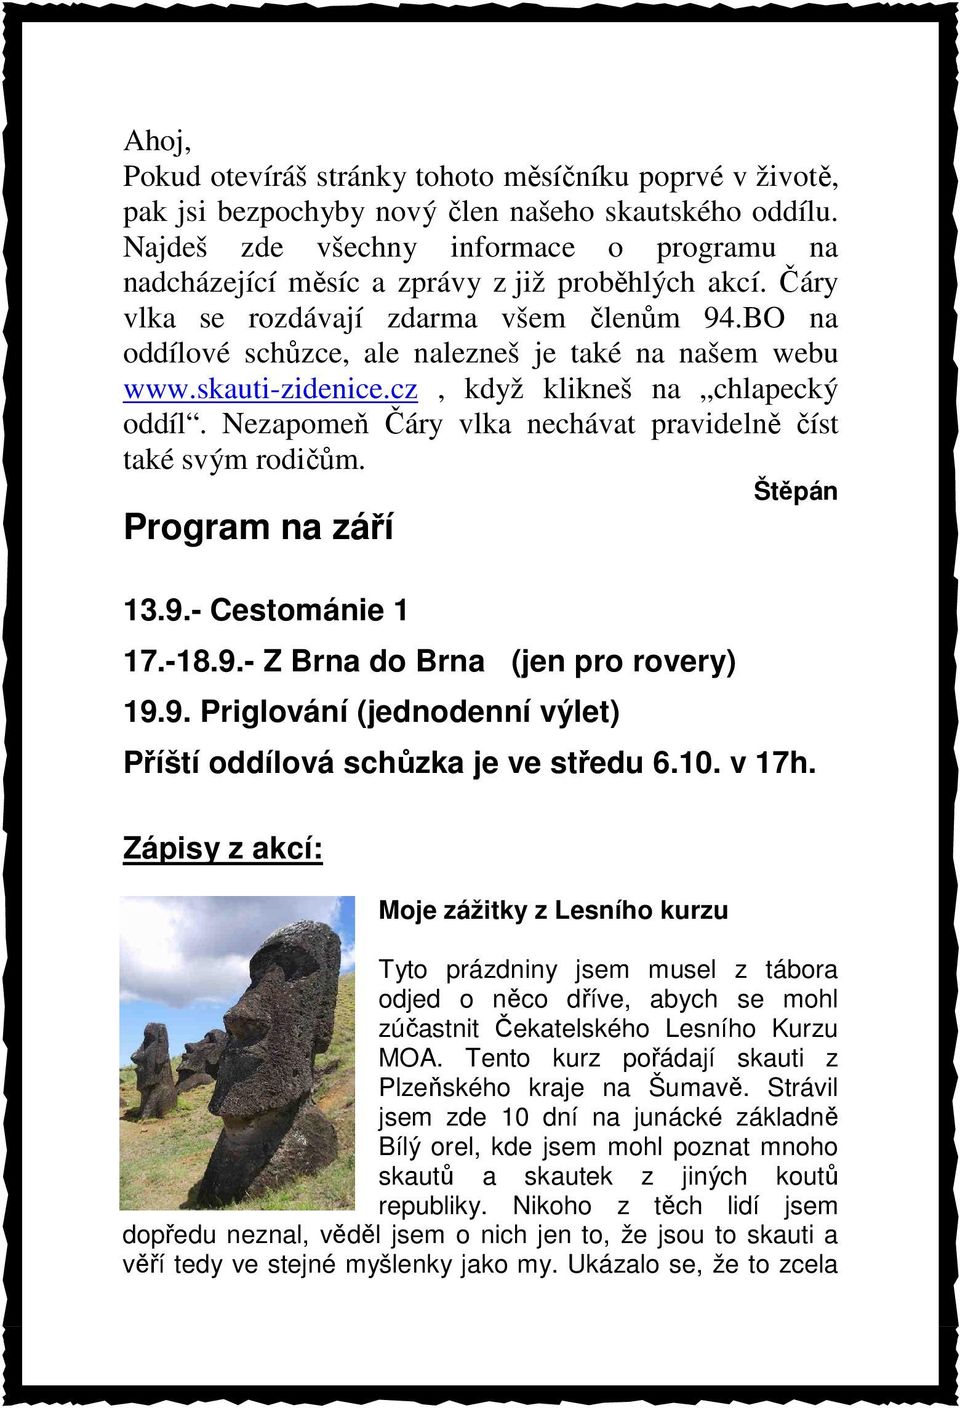 BO na oddílové schůzce, ale nalezneš je také na našem webu www.skauti-zidenice.cz, když klikneš na chlapecký oddíl. Nezapomeň Čáry vlka nechávat pravidelně číst také svým rodičům.